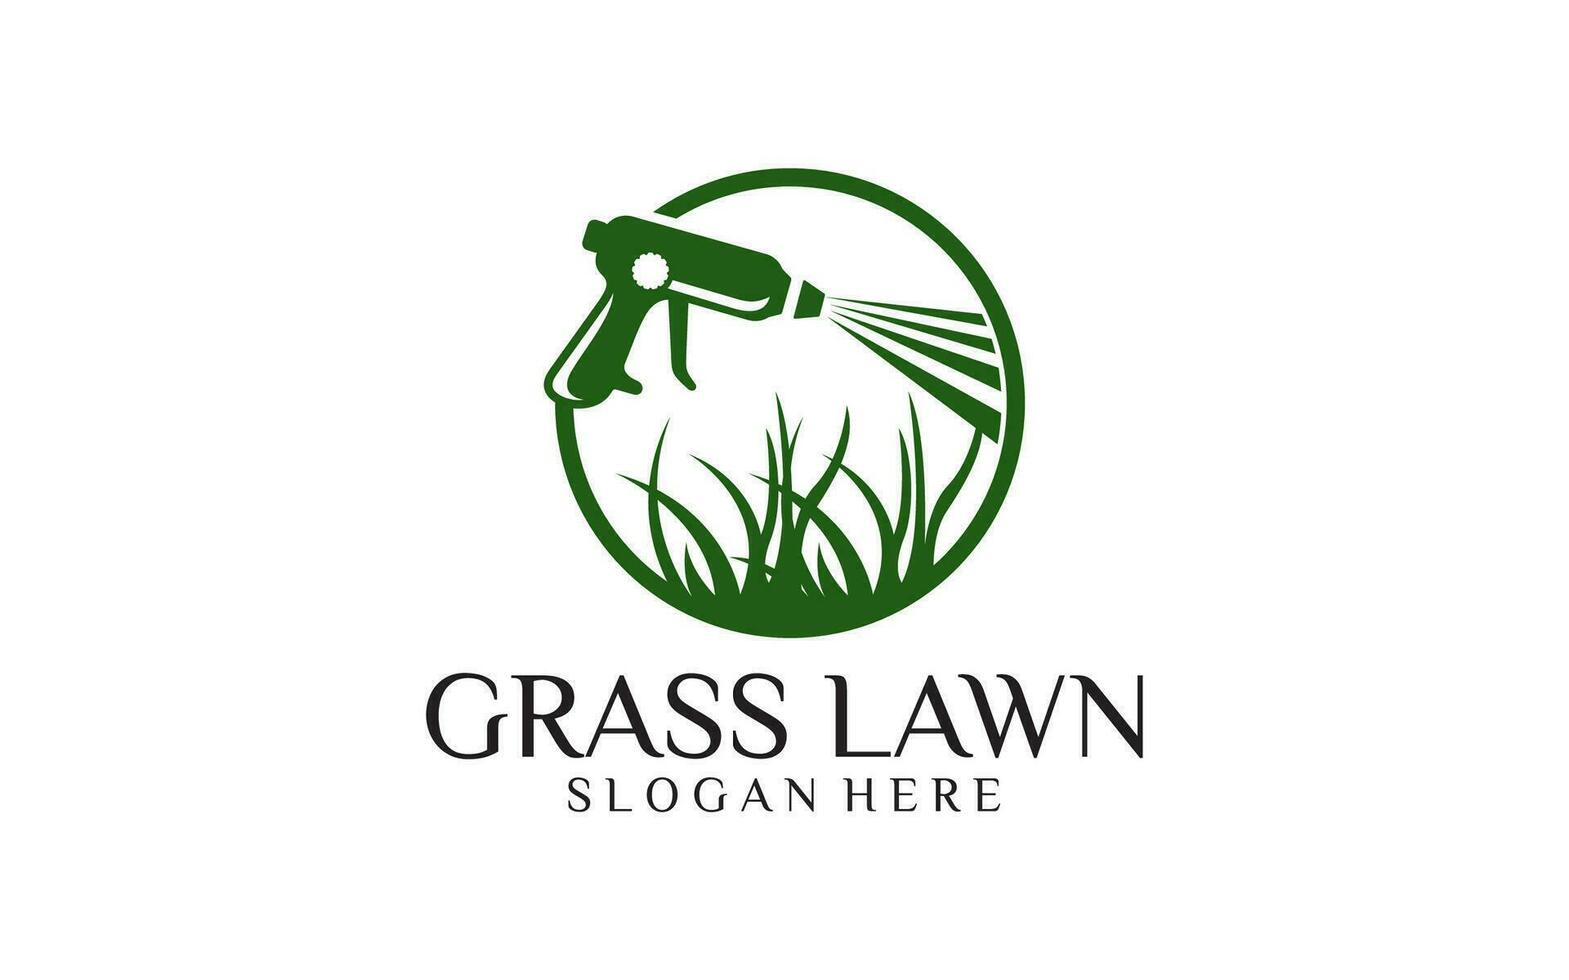 Grass lawn Care logo design vector